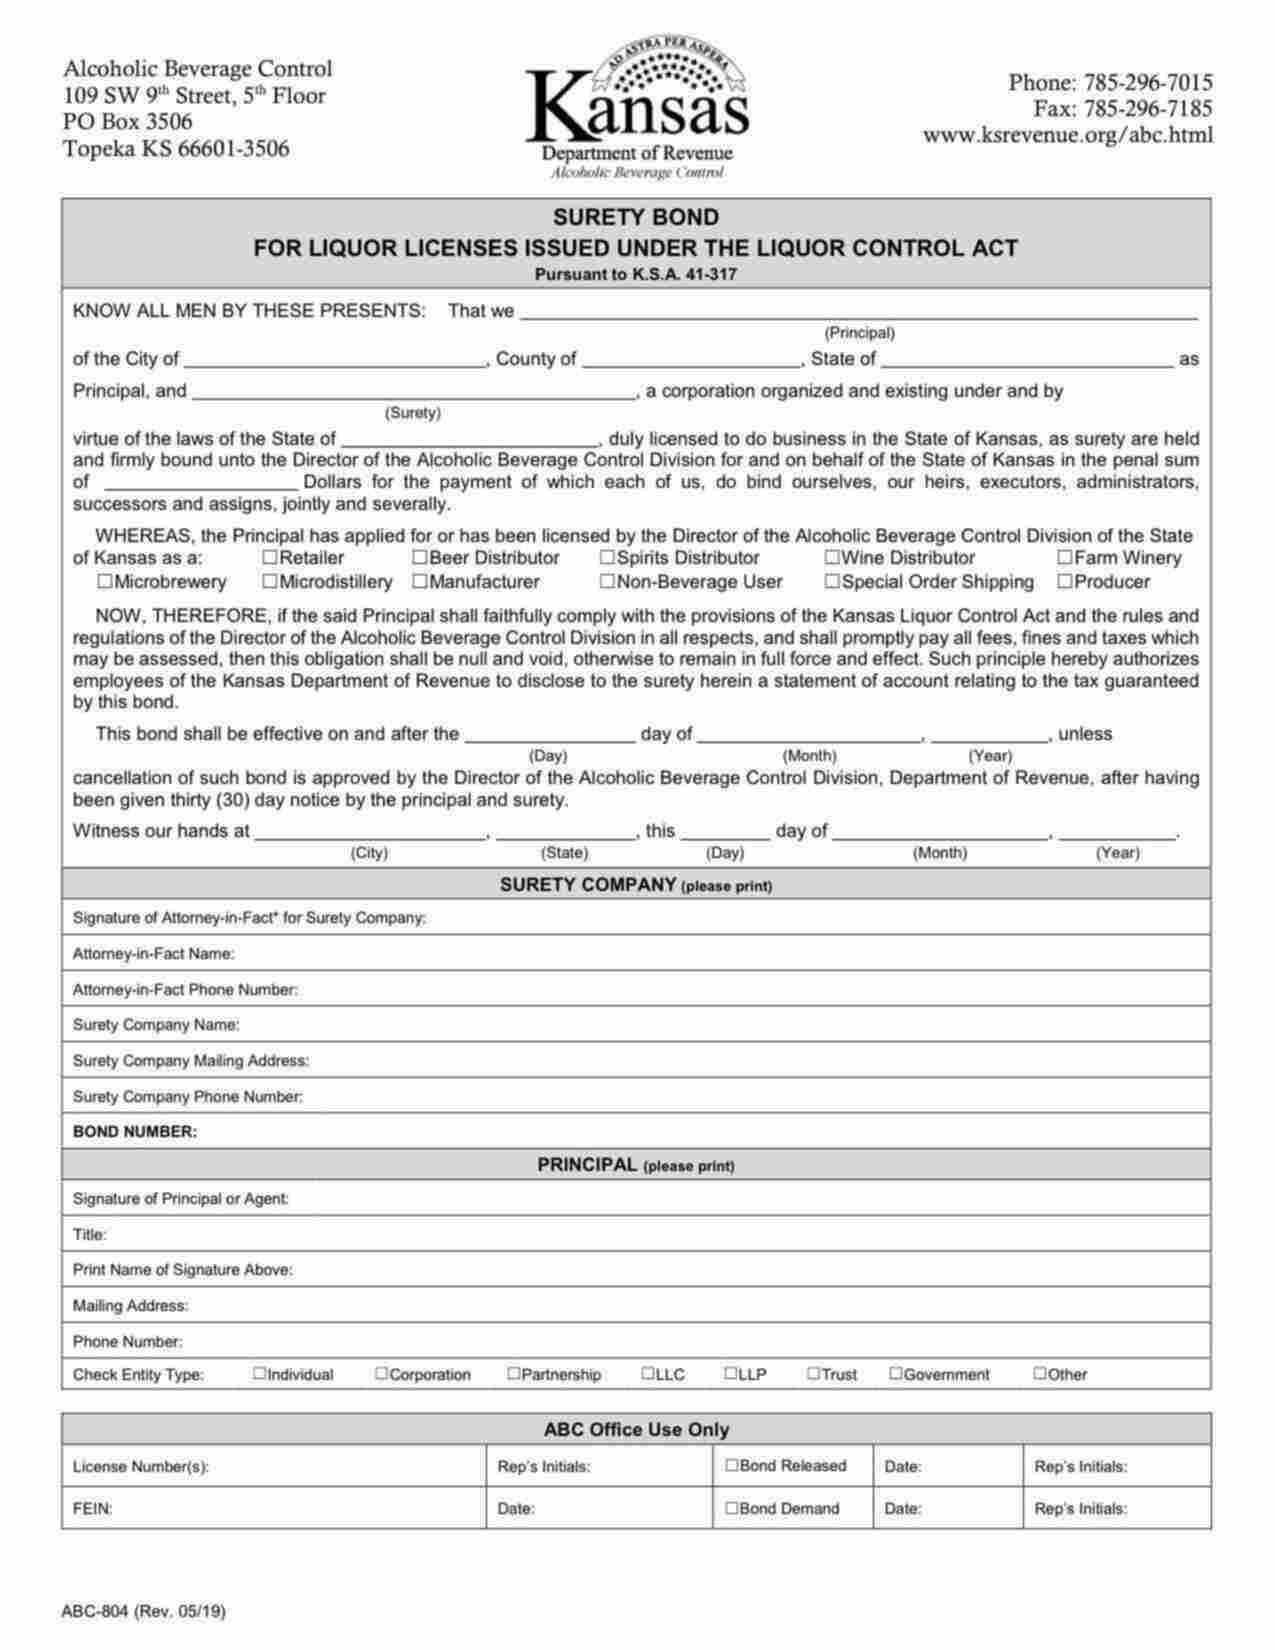 Kansas Liquor License: Special Order Shipping Bond Form